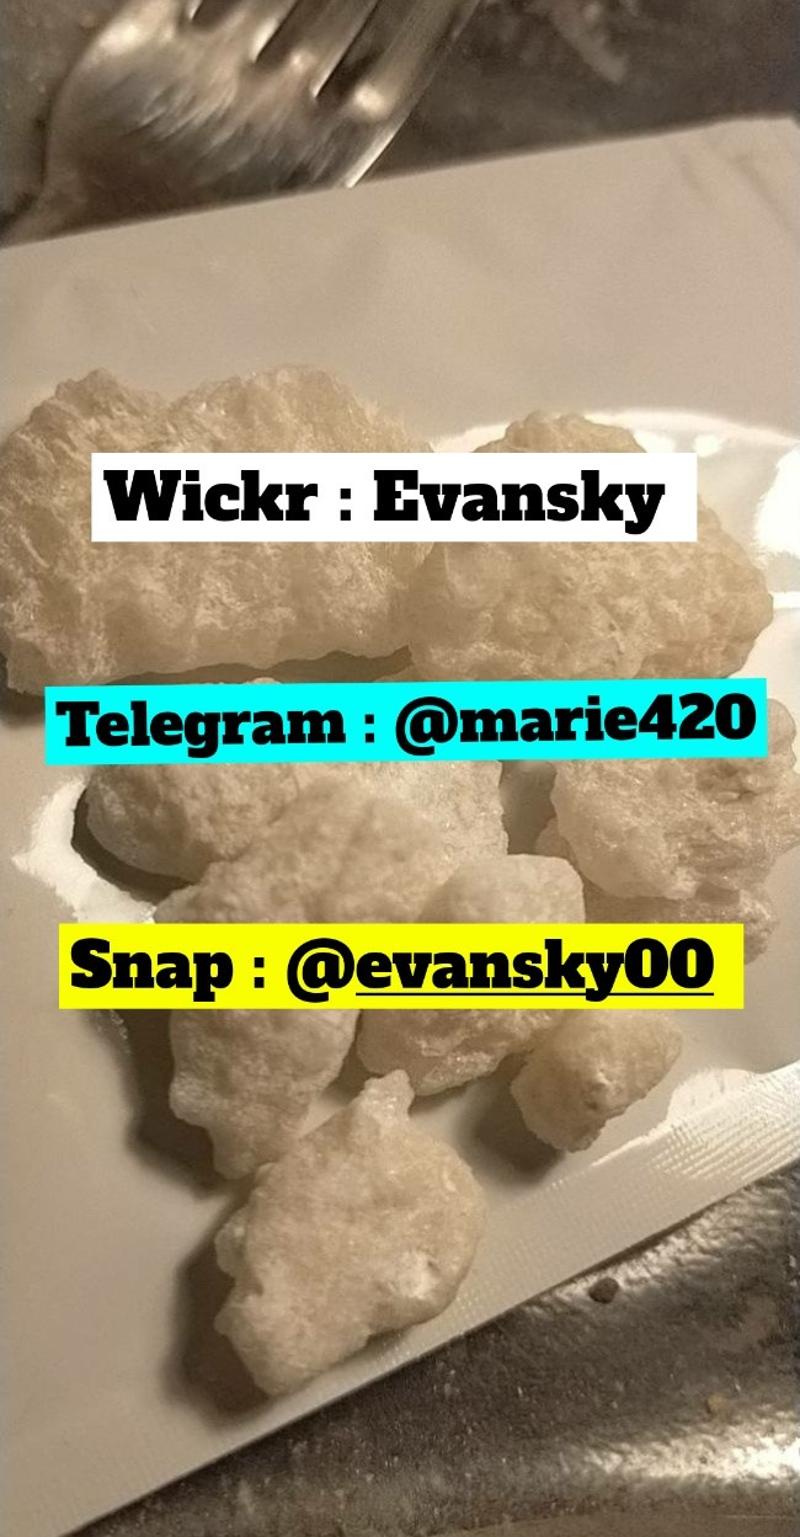 Wickr : Evansky Telegram : marie420 snap : EVANSKY00 pure ghb, acid Brisbane Wic